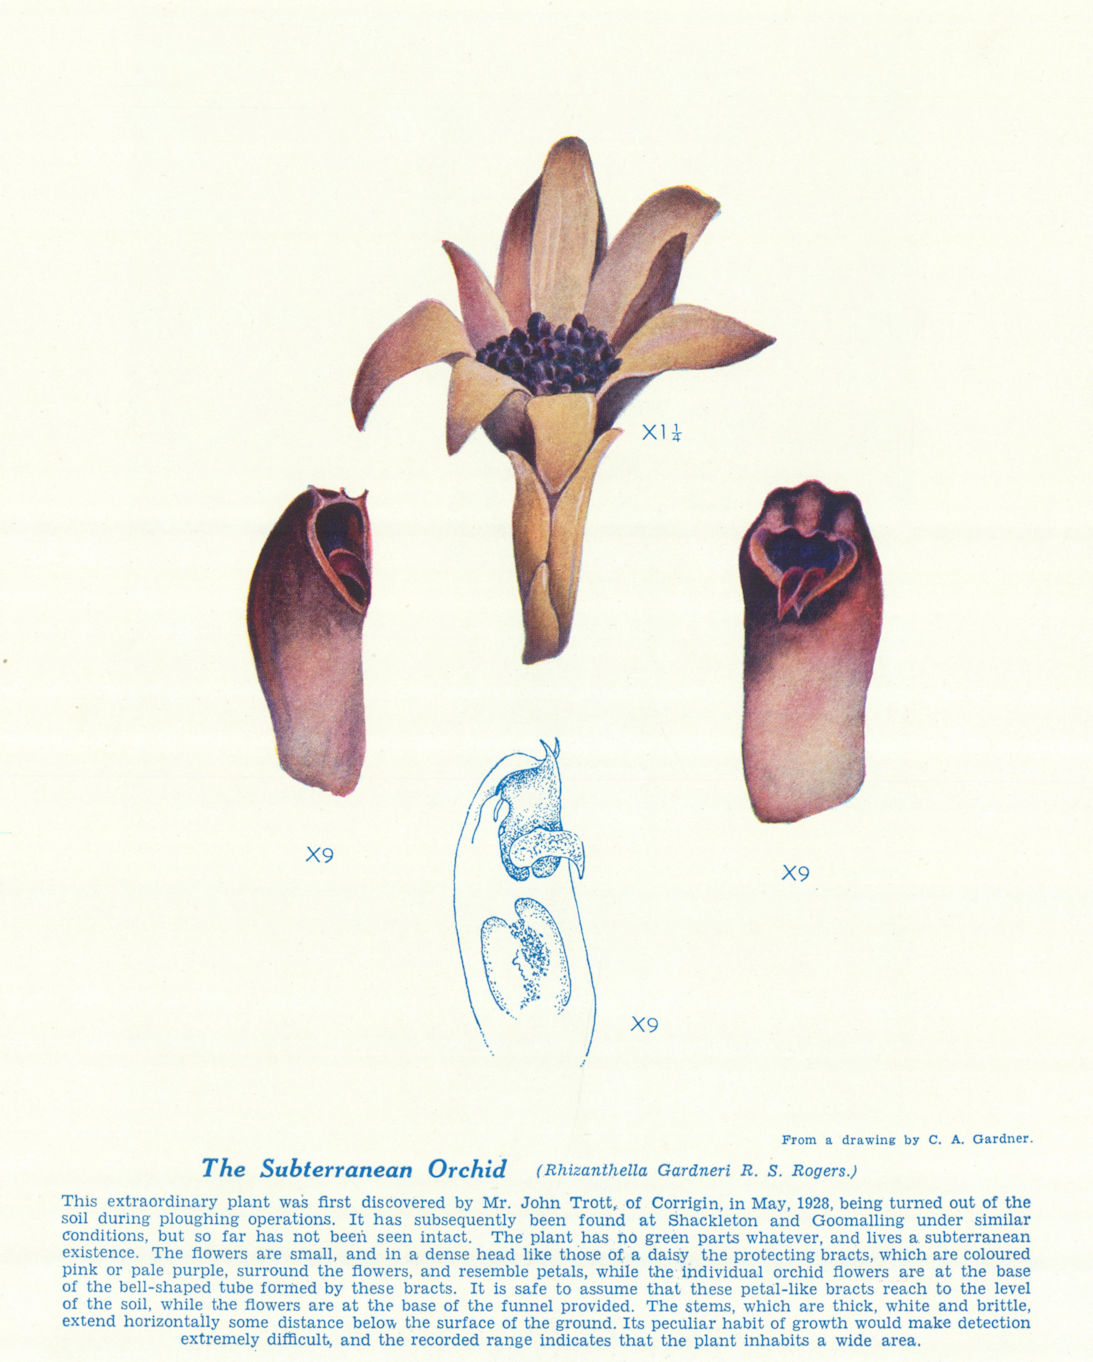 Subterranean Orchid (Rhizanthella Gardneri). West Australian Wild Flowers 1950